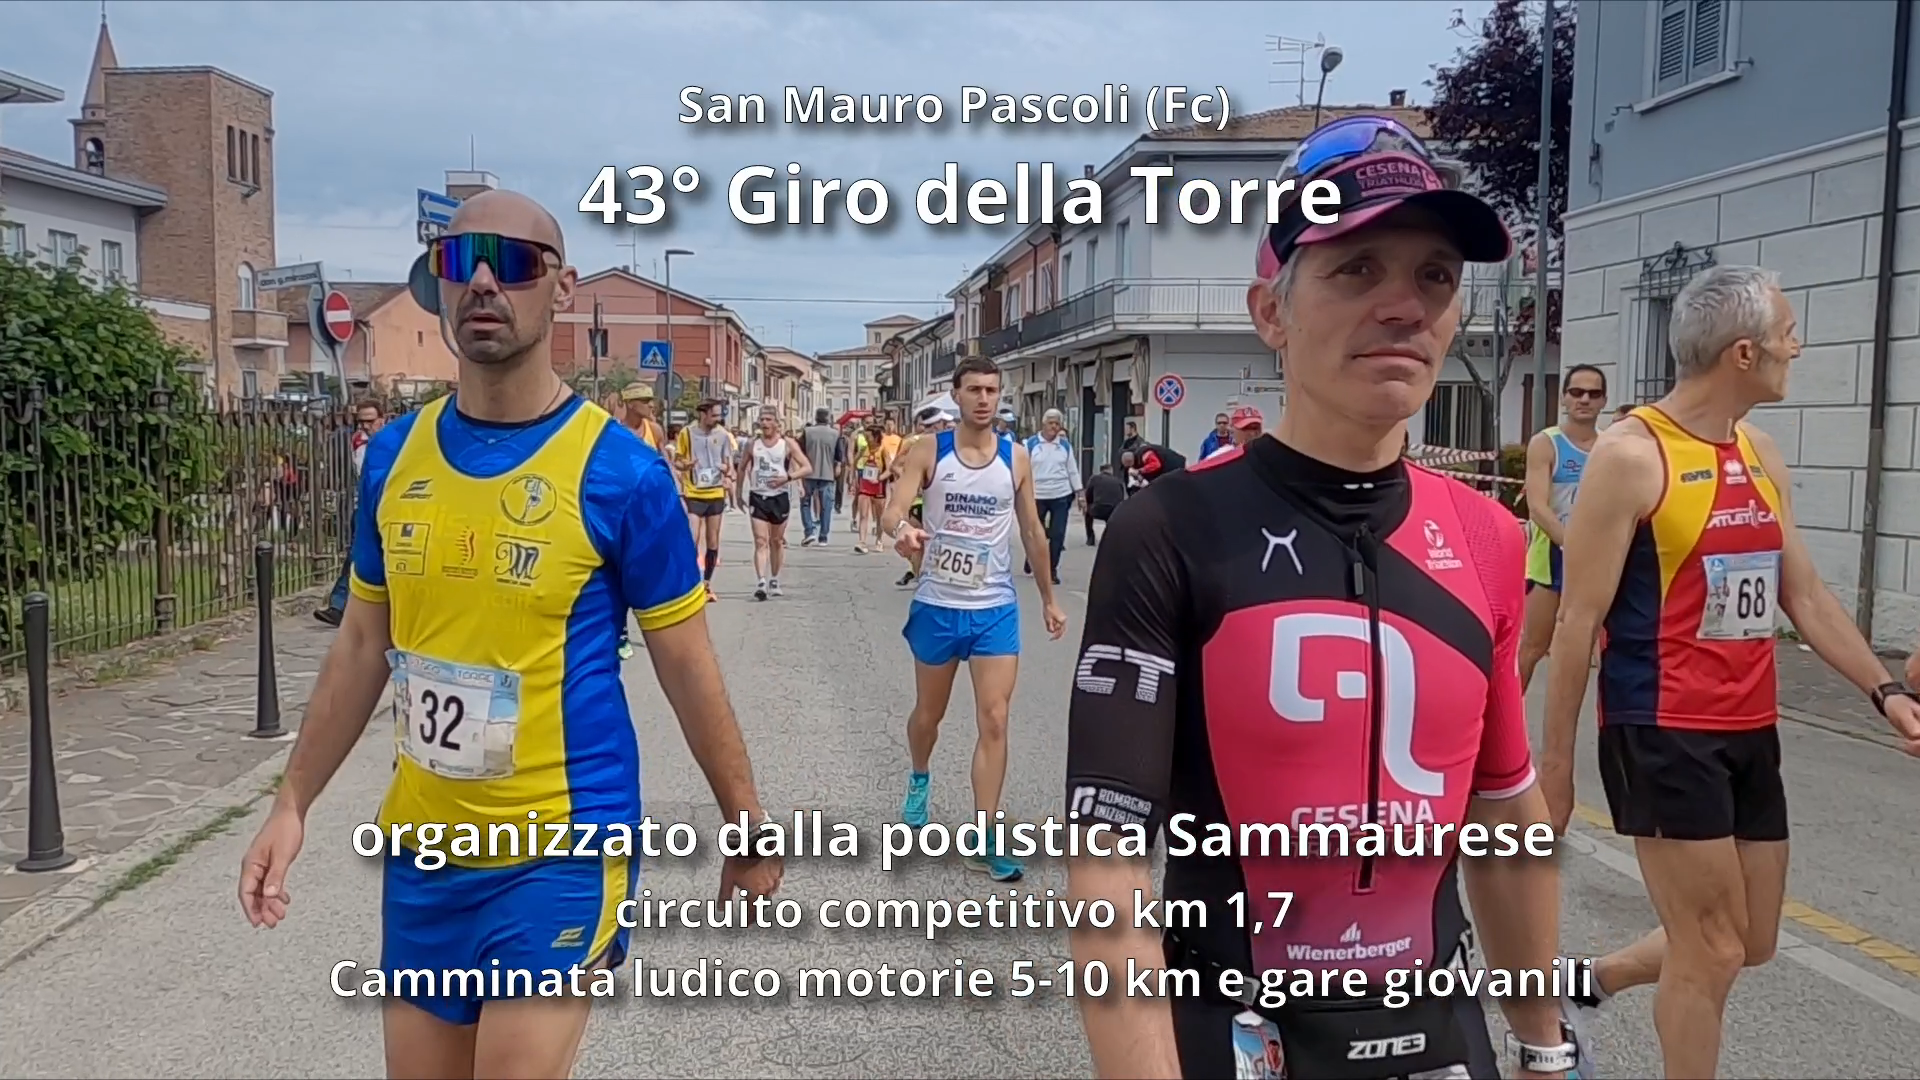 43° Giro della Torre: organizzato dalla Podistica Sammaurese